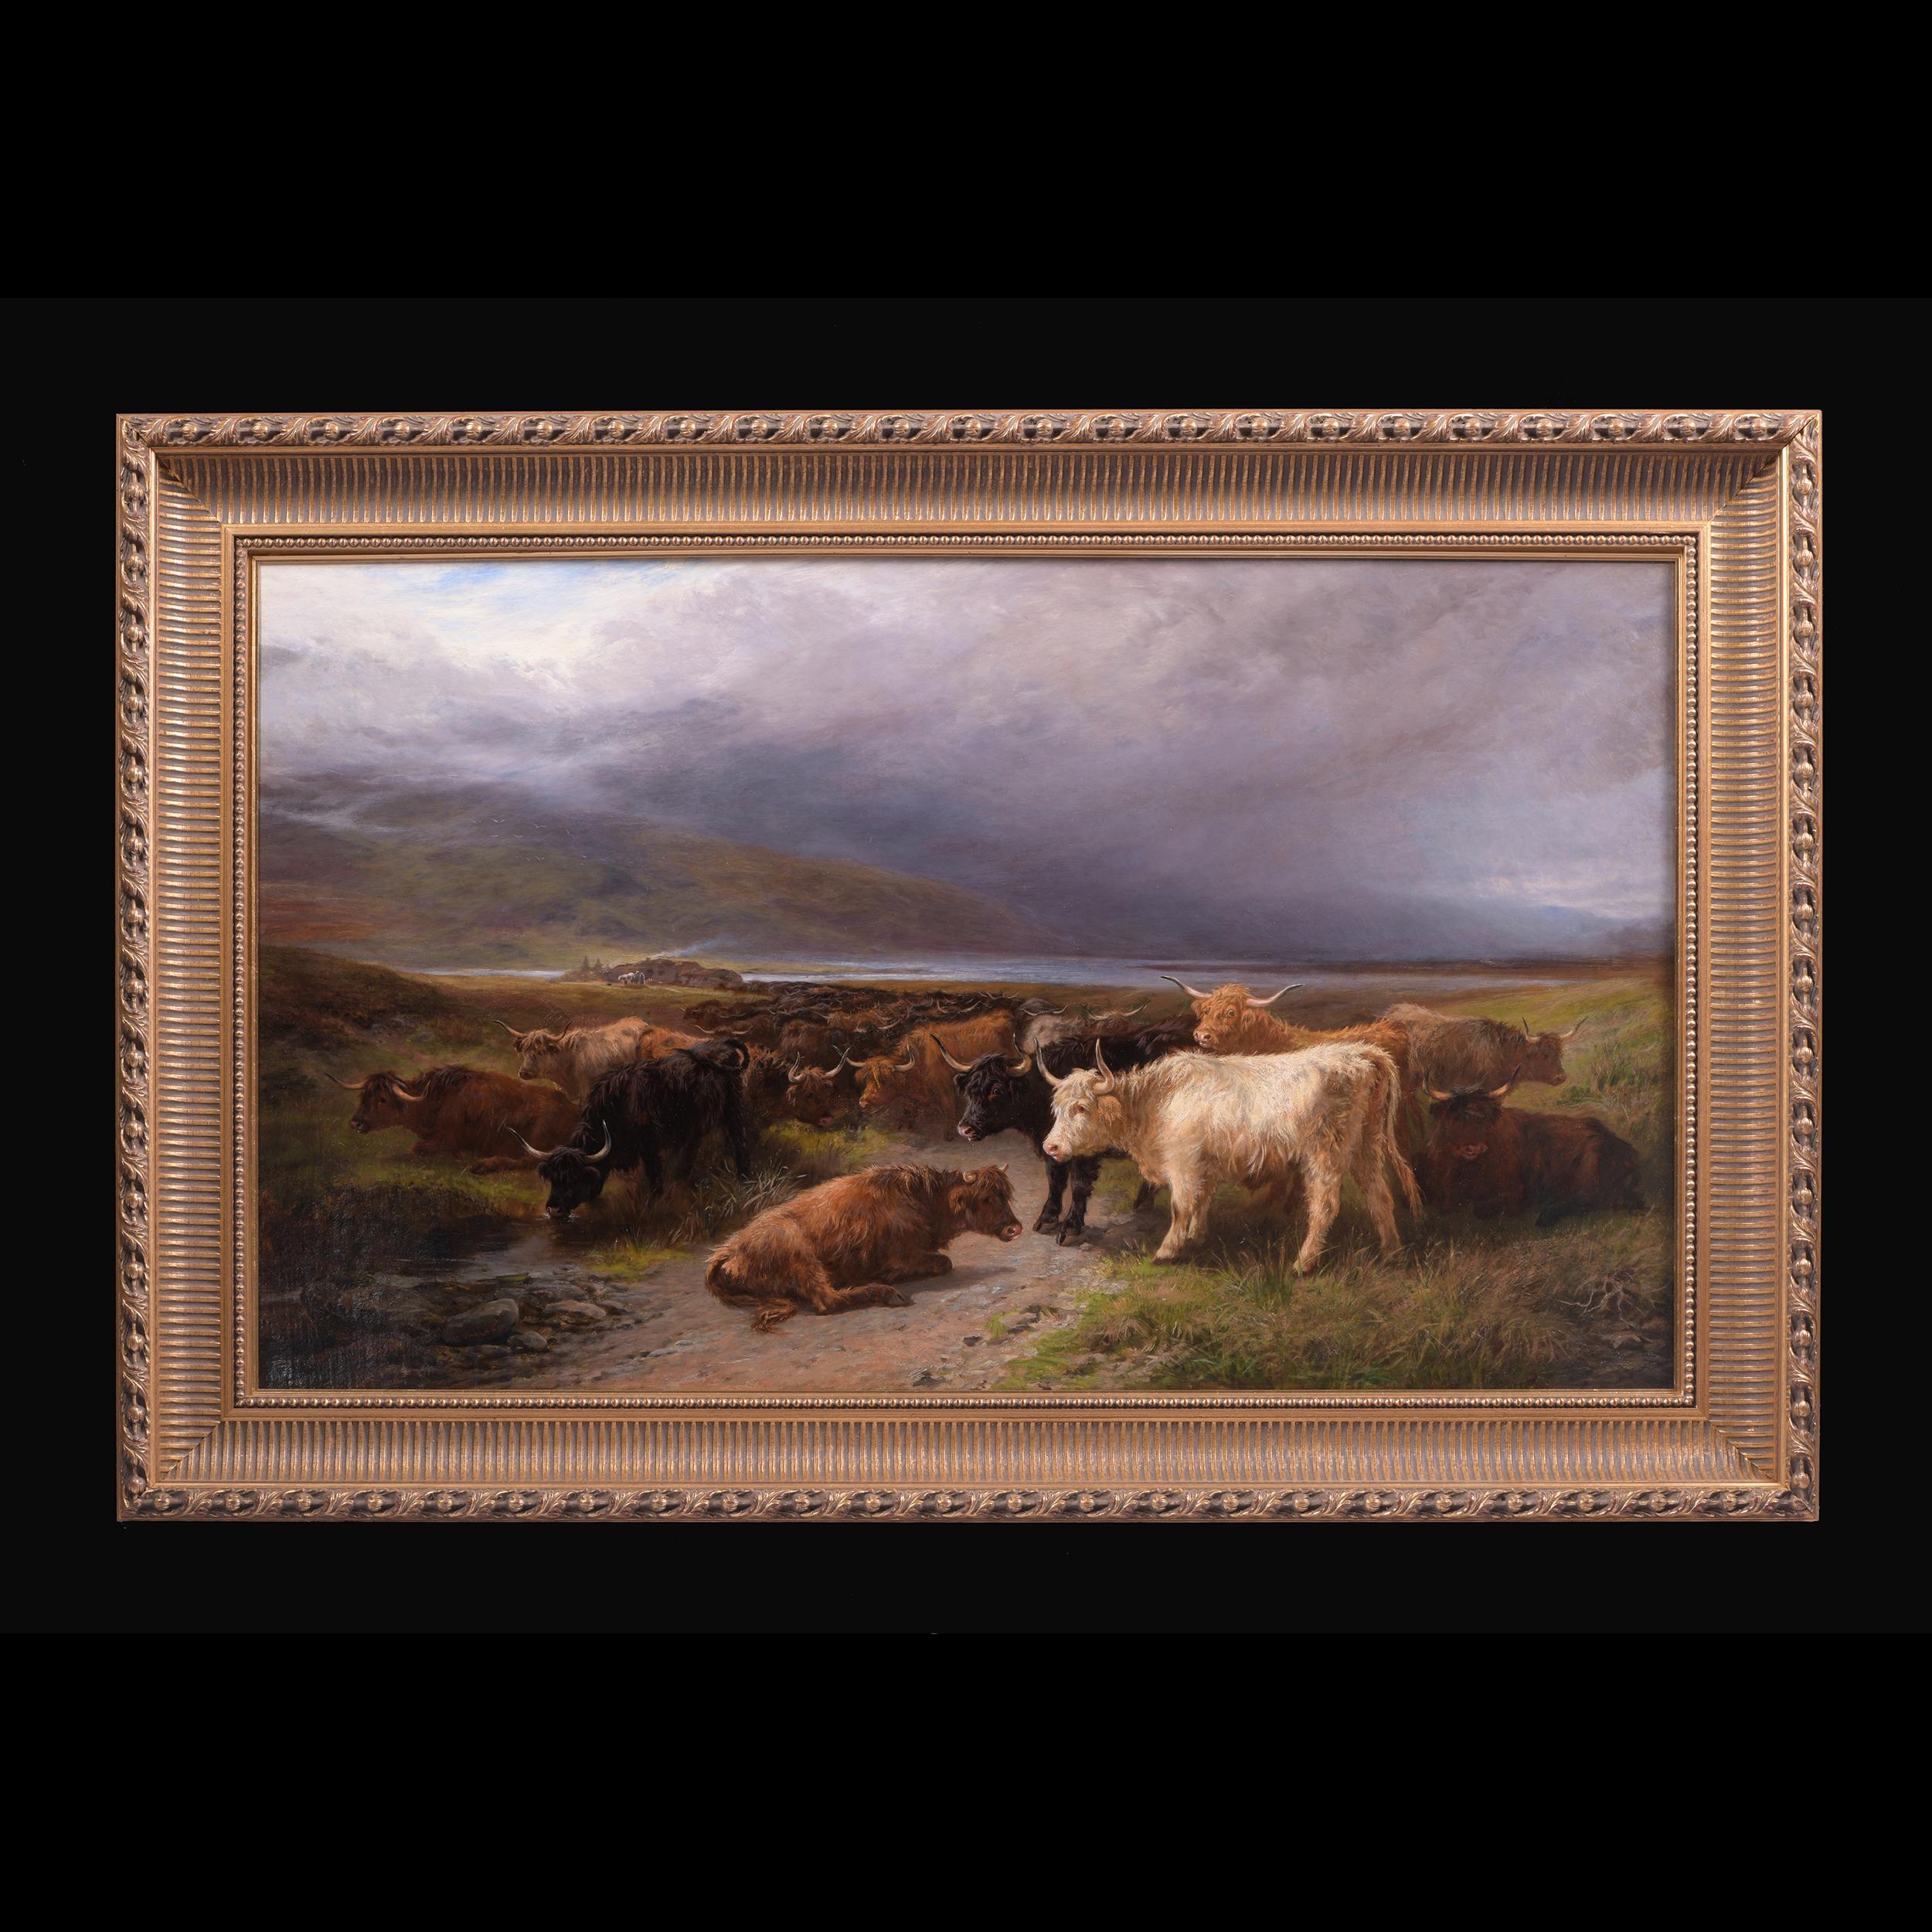 Ein prächtiges Paar schottischer Hochland-Rinderszenen von Henry Garland in modernen vergoldeten Rahmen...

Künstler: Henry Garland (1834-1913), Brite

Titel: 